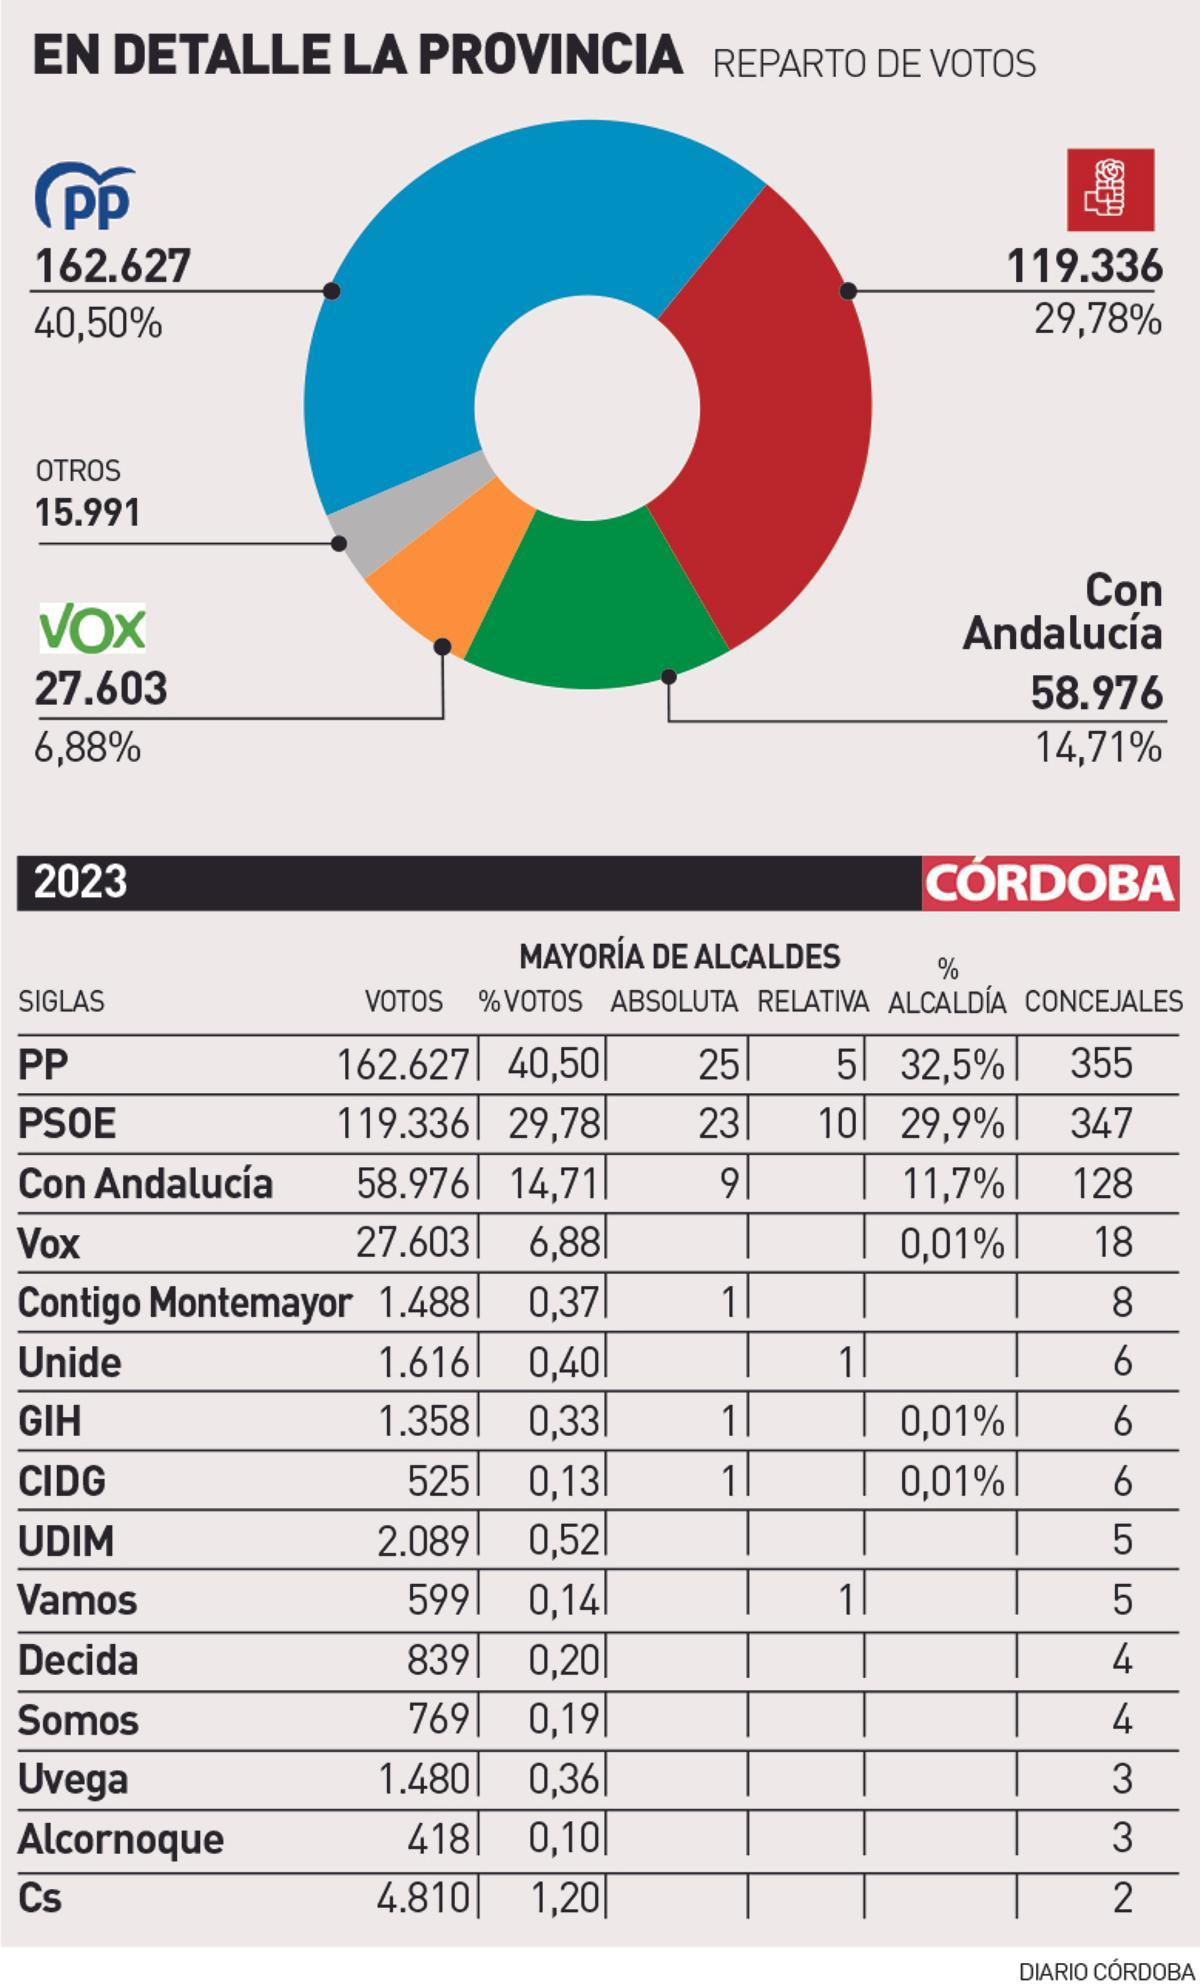 Reparto de votos y concejales en la provincia de Córdoba tras los comicios del 28M.